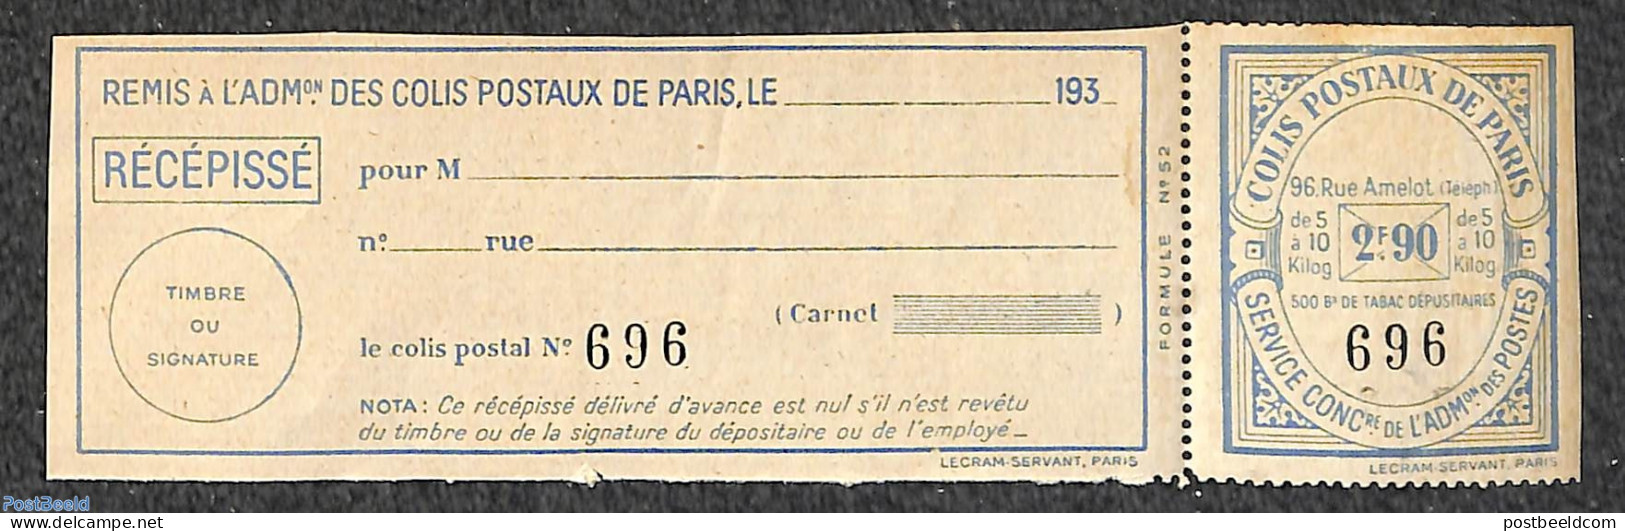 France 1930 Colis Postaux 5a10kg 2F90, Unused (hinged) - Unused Stamps